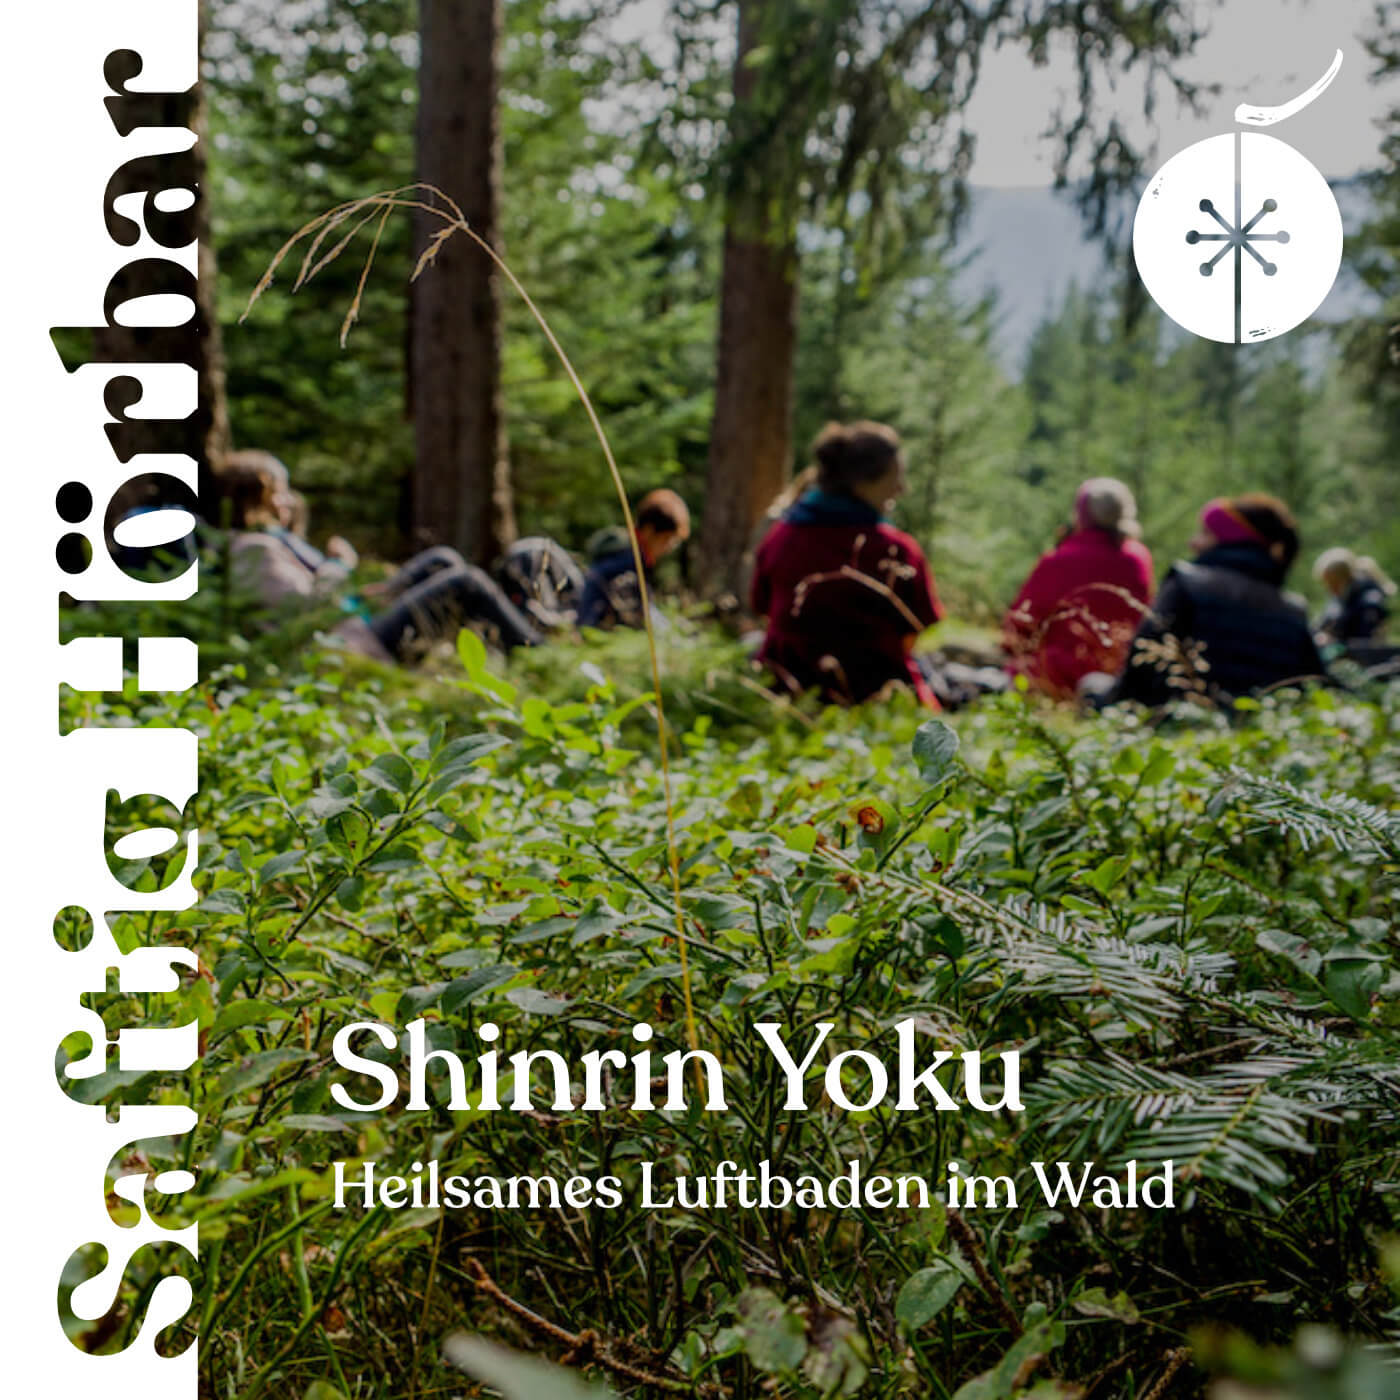 SAFTIG Podcast Cover Shinrin Yoku